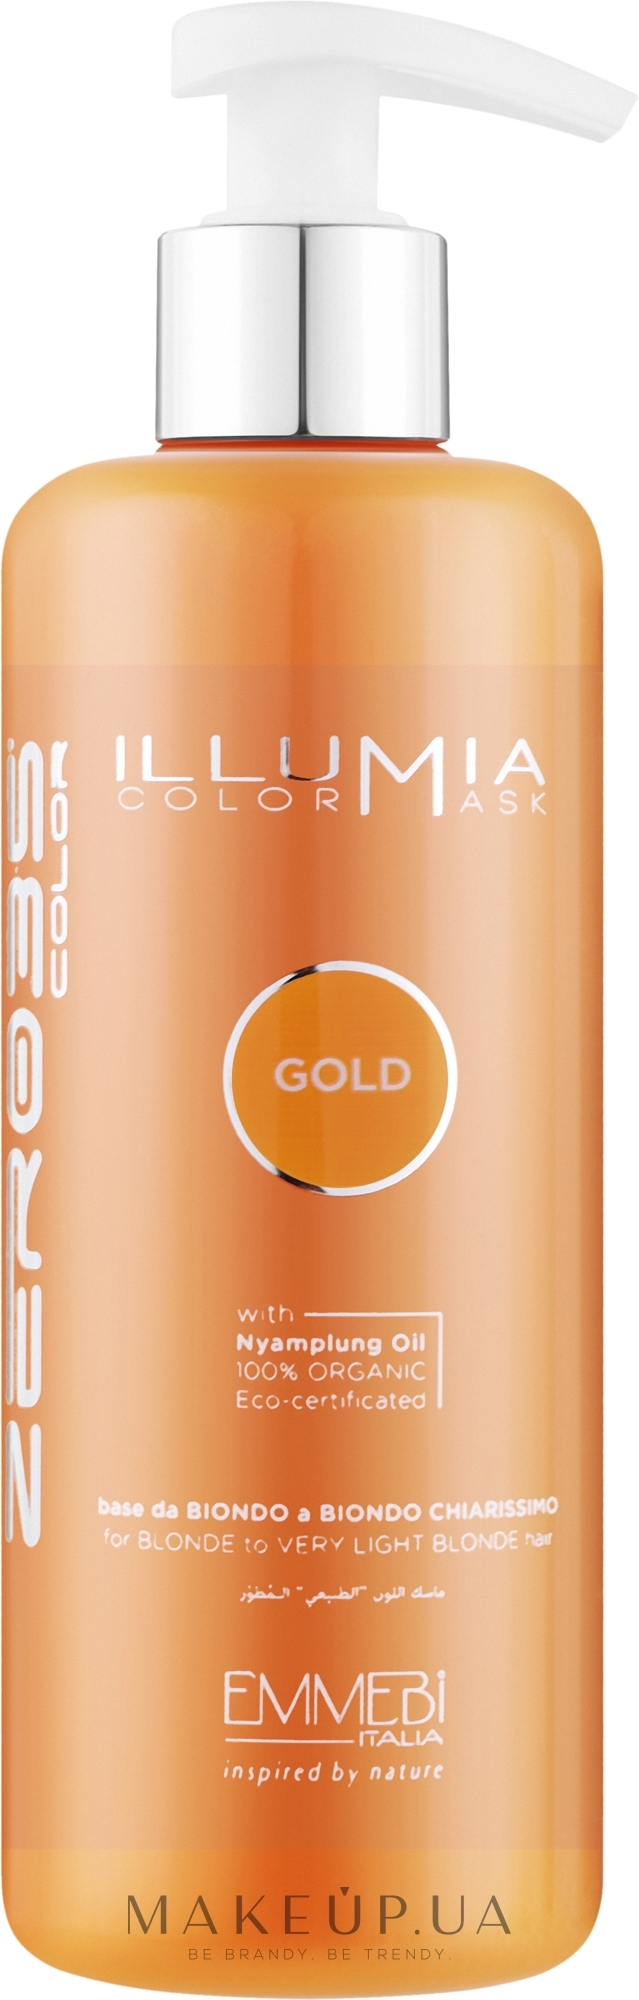 Тонирующая маска для волос - Emmebi Italia Illumia Color Mask Gold  — фото 300ml